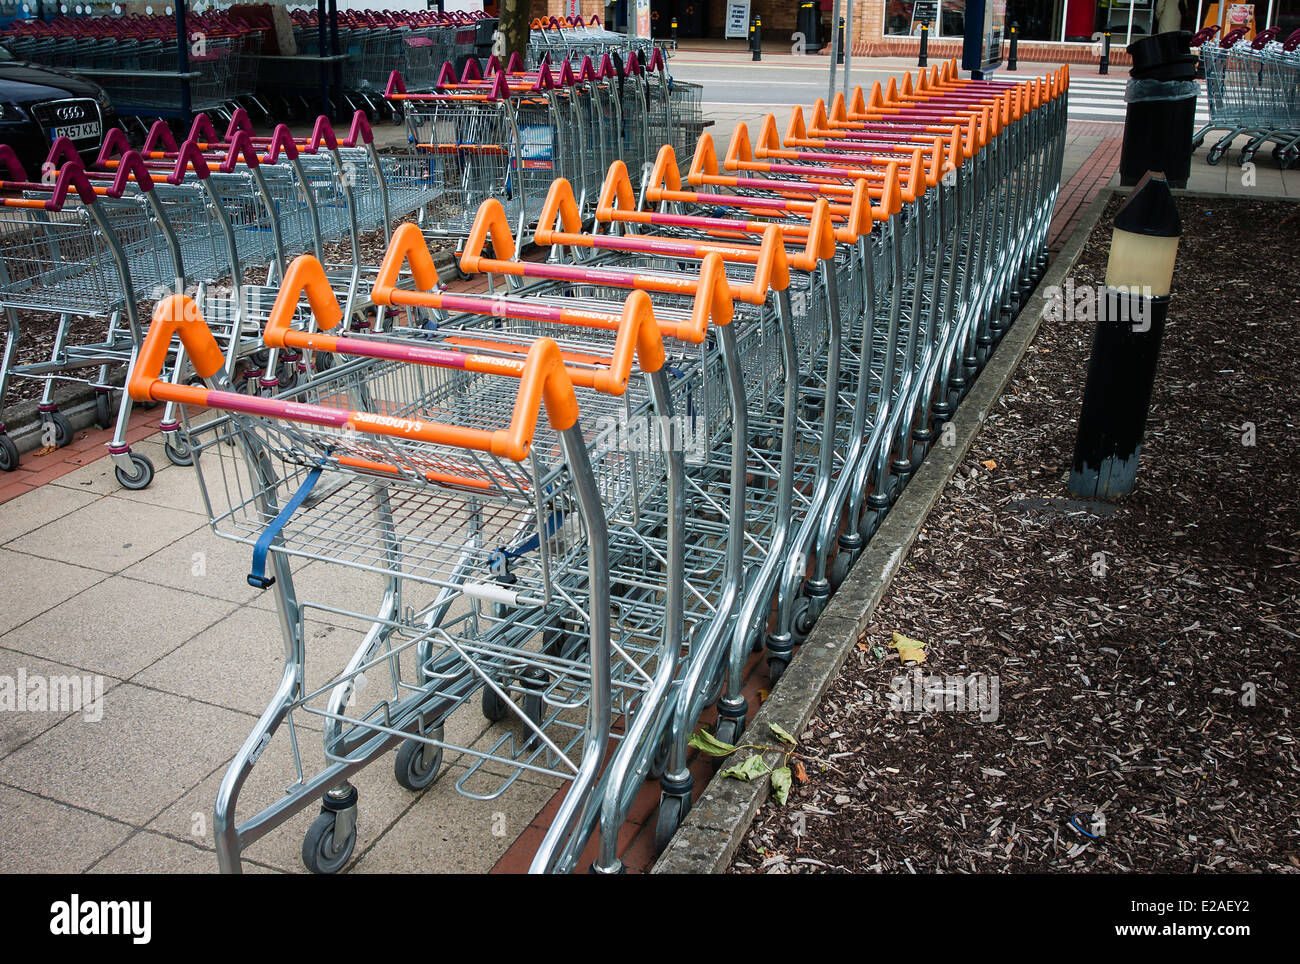 Linee di vuoto carrelli per supermercati in attesa di utilizzo da parte dei clienti Foto Stock